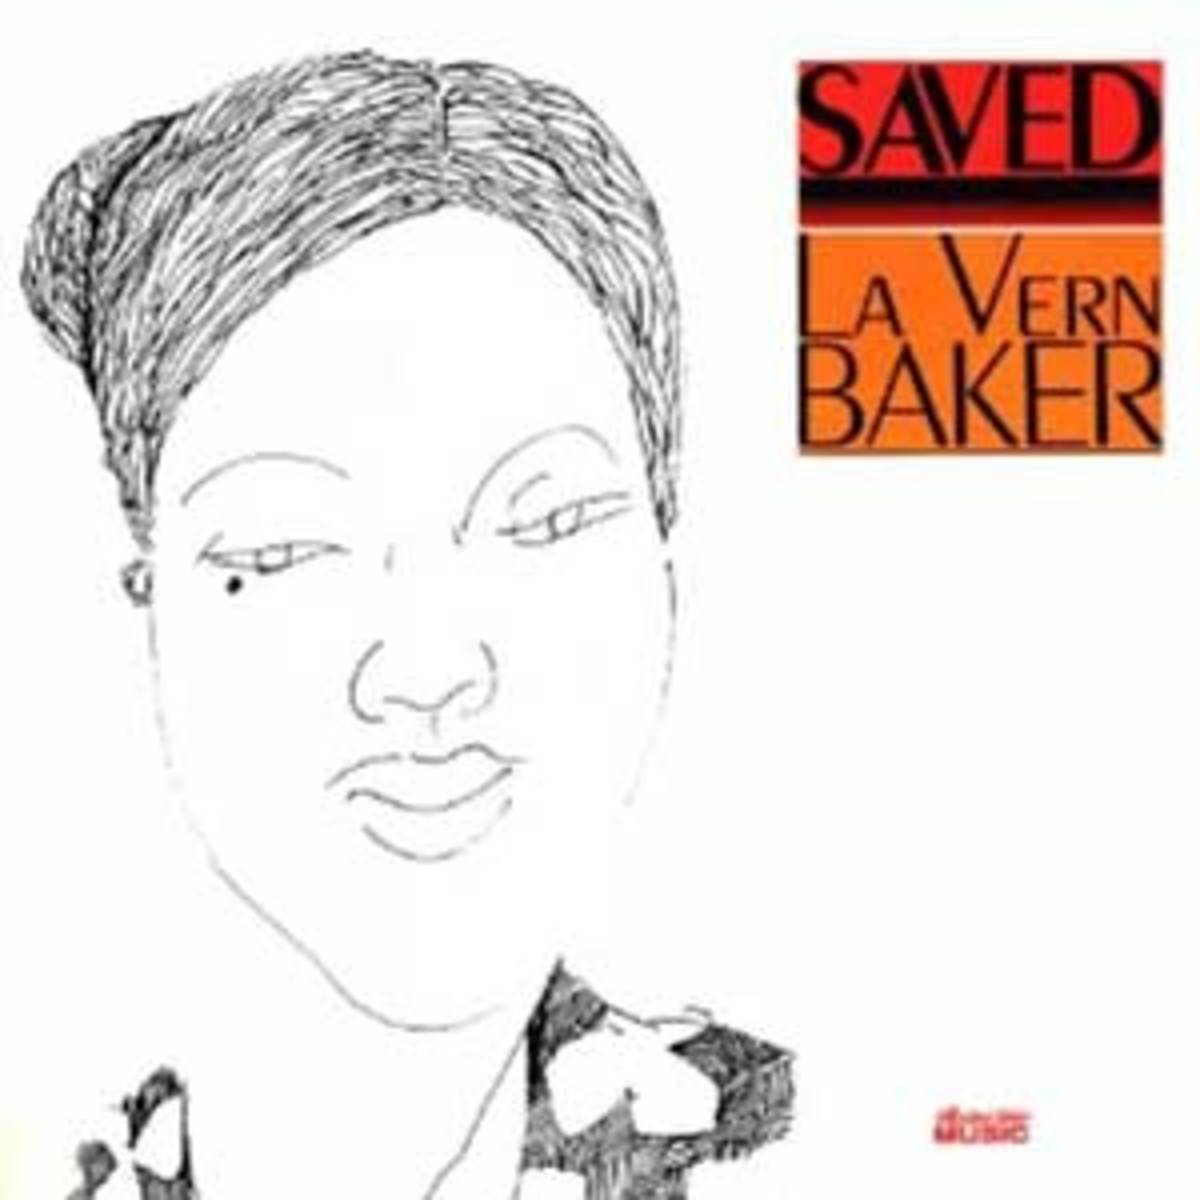 LaVernBaker_Saved